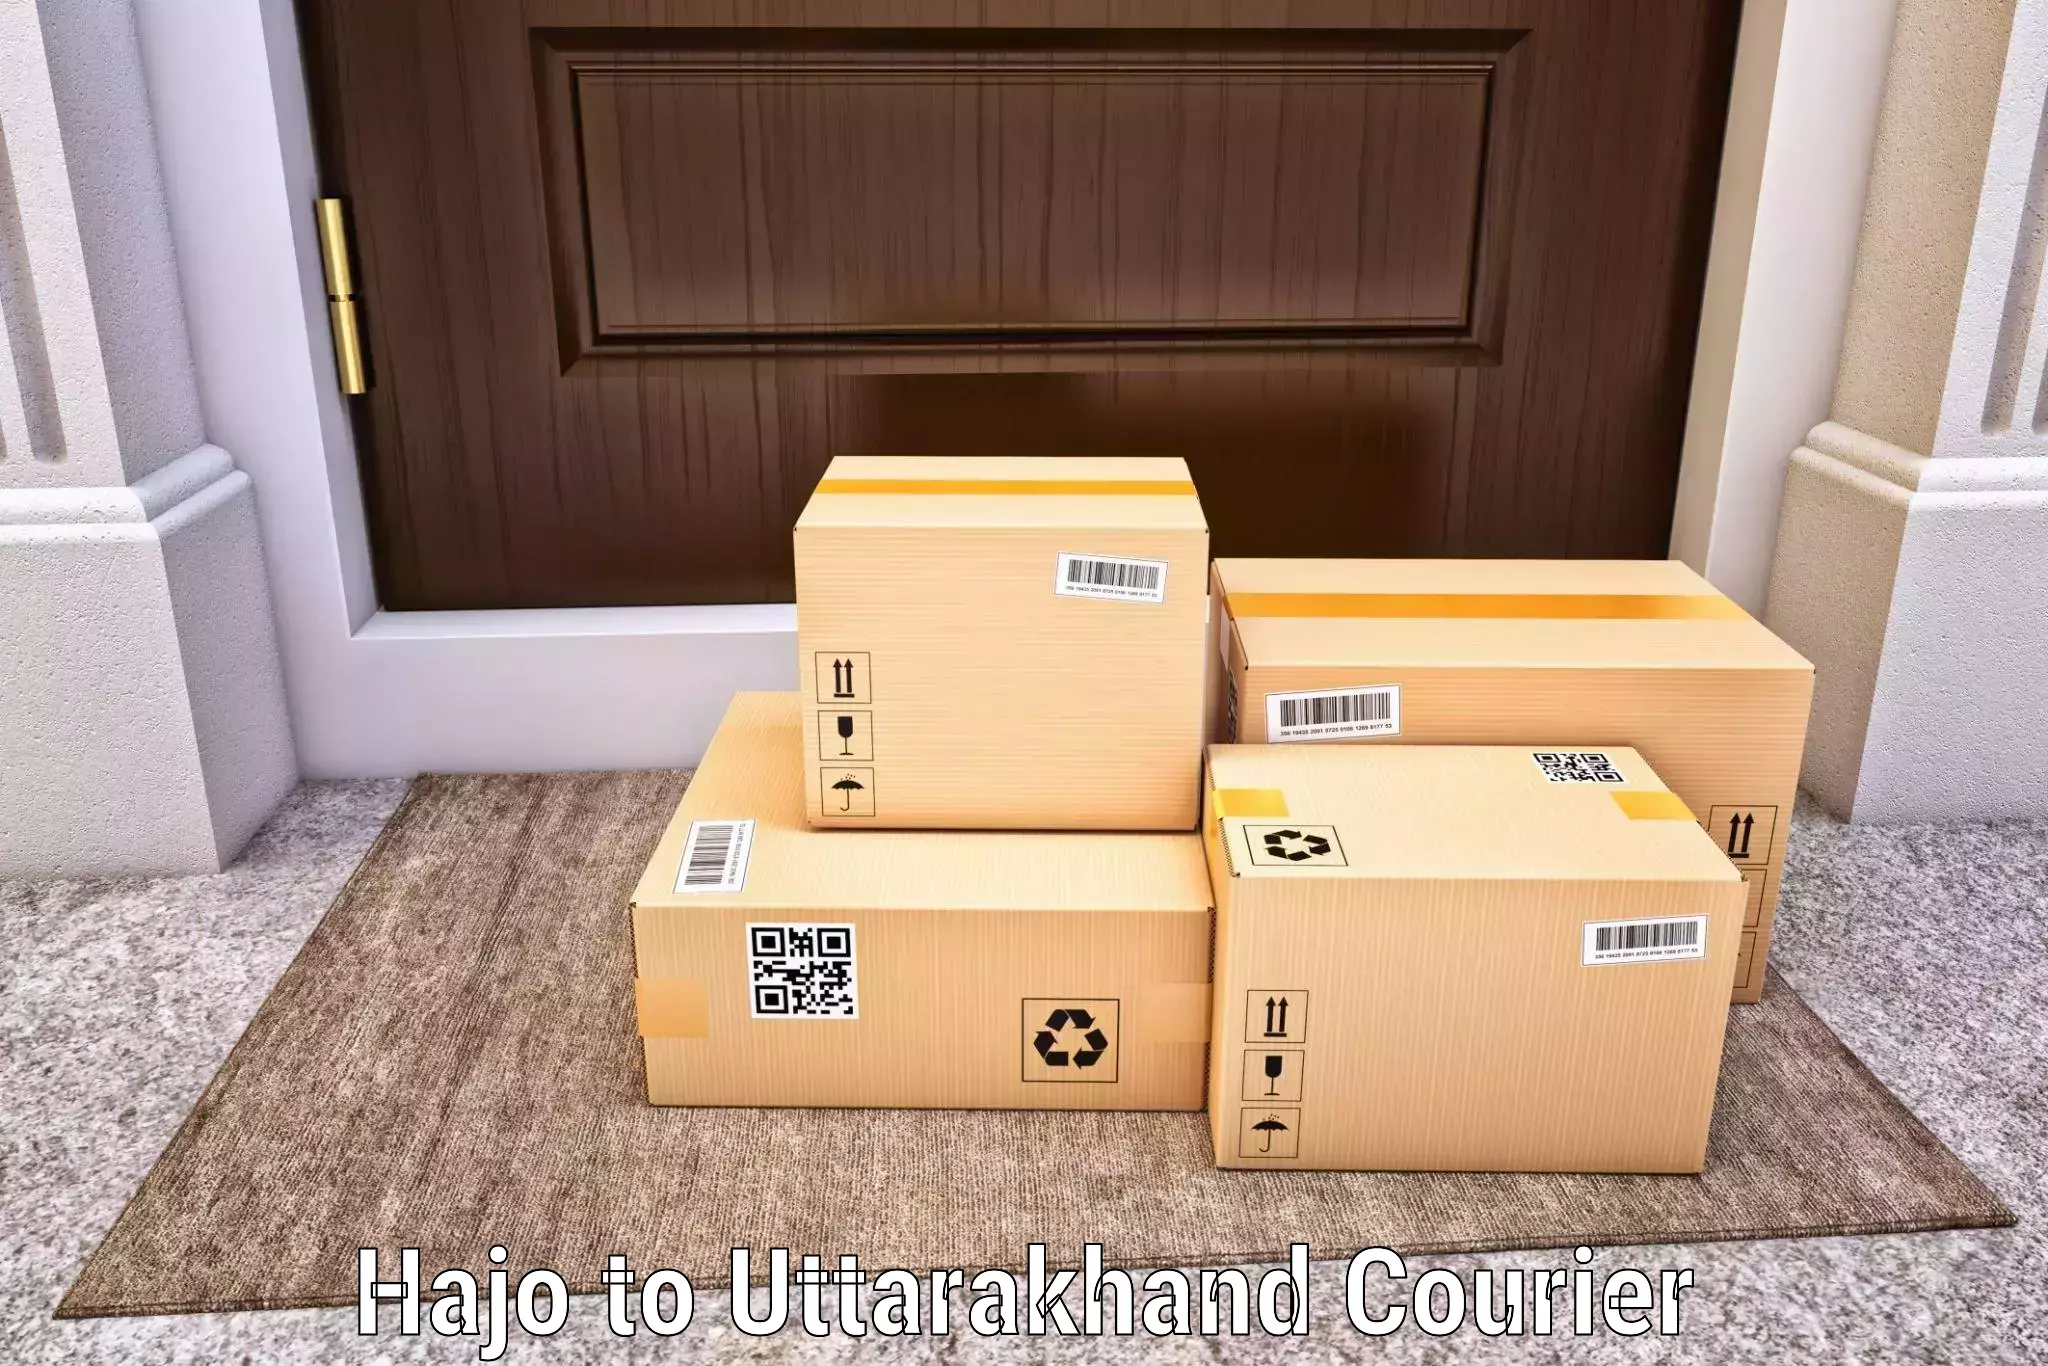 Full-service courier options Hajo to Nainital